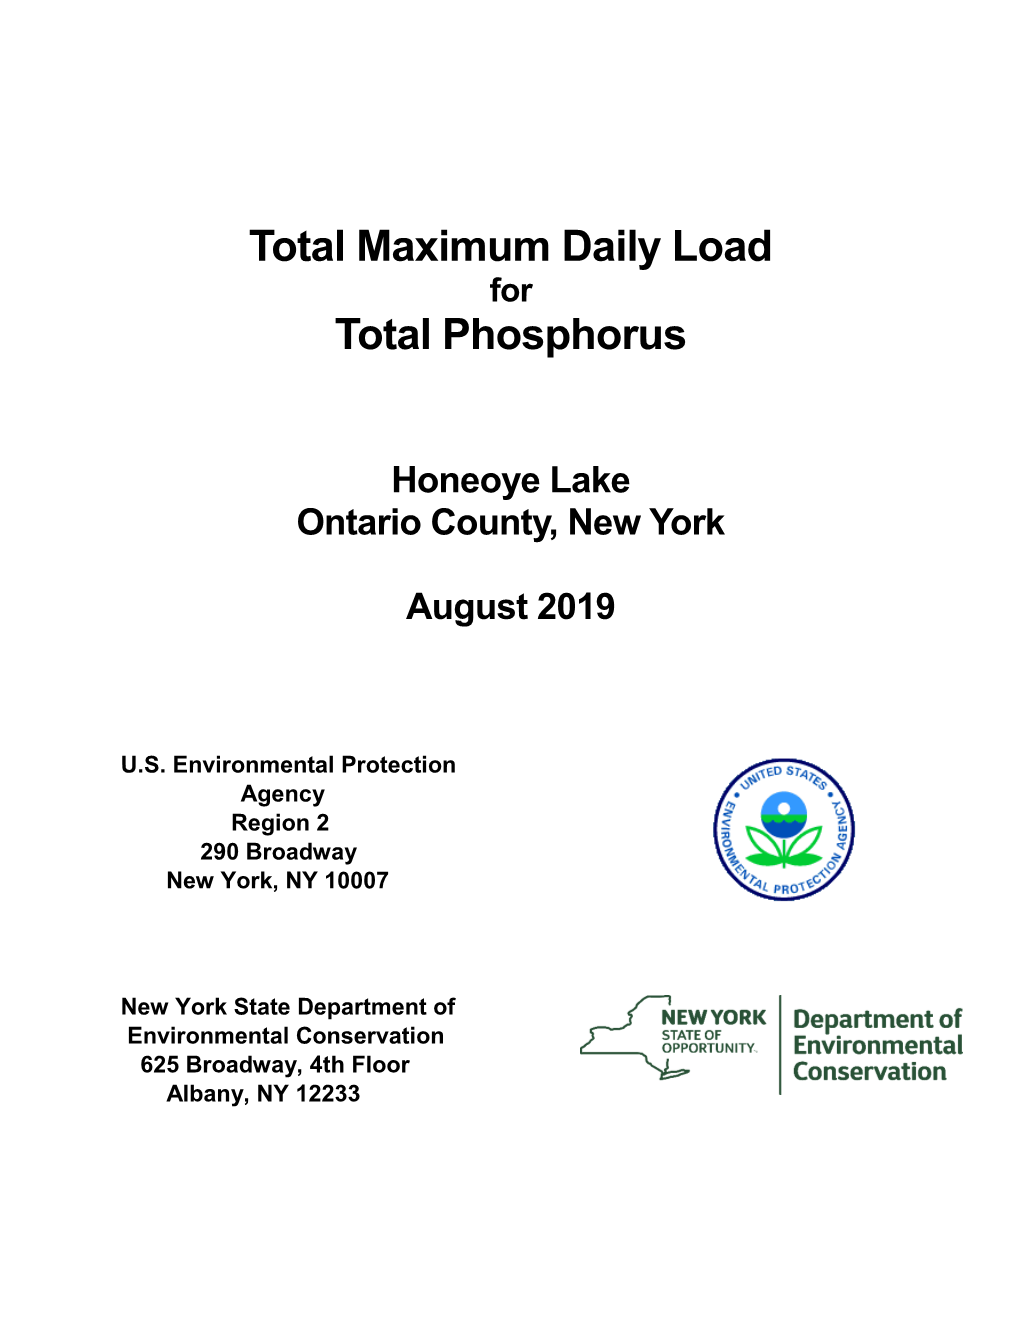 Total Maximum Daily Load (TMDL) for Phosphorus in Honeoye Lake